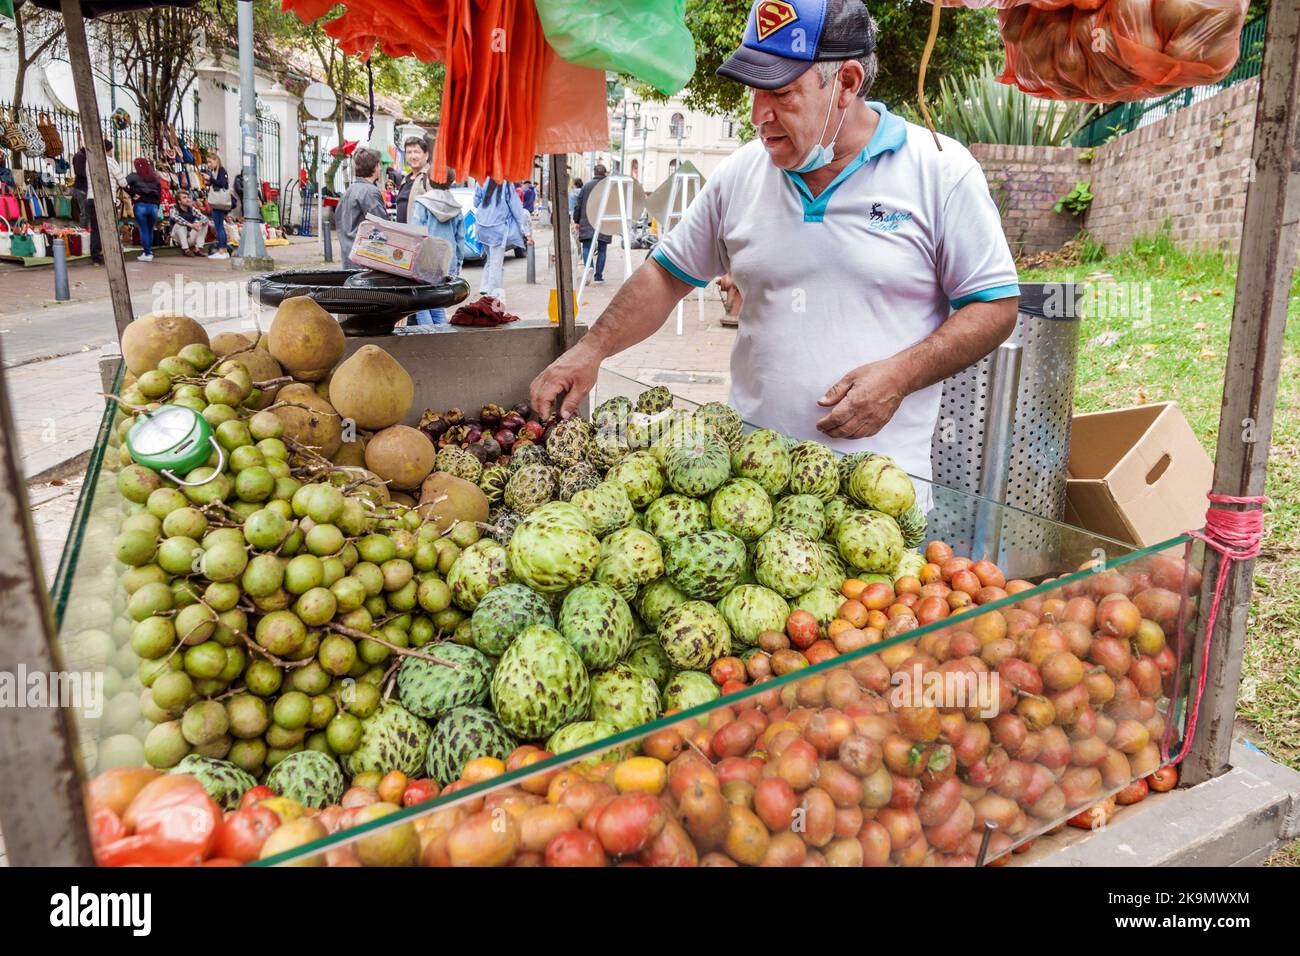 Bogota Colombia,Usaquen Carrera 6a Mercado de Las Pulgas en Usaquen Domenica mercato delle pulci, produrre frutti tropicali solanum quitoense lulo Naranjilla Annon Foto Stock